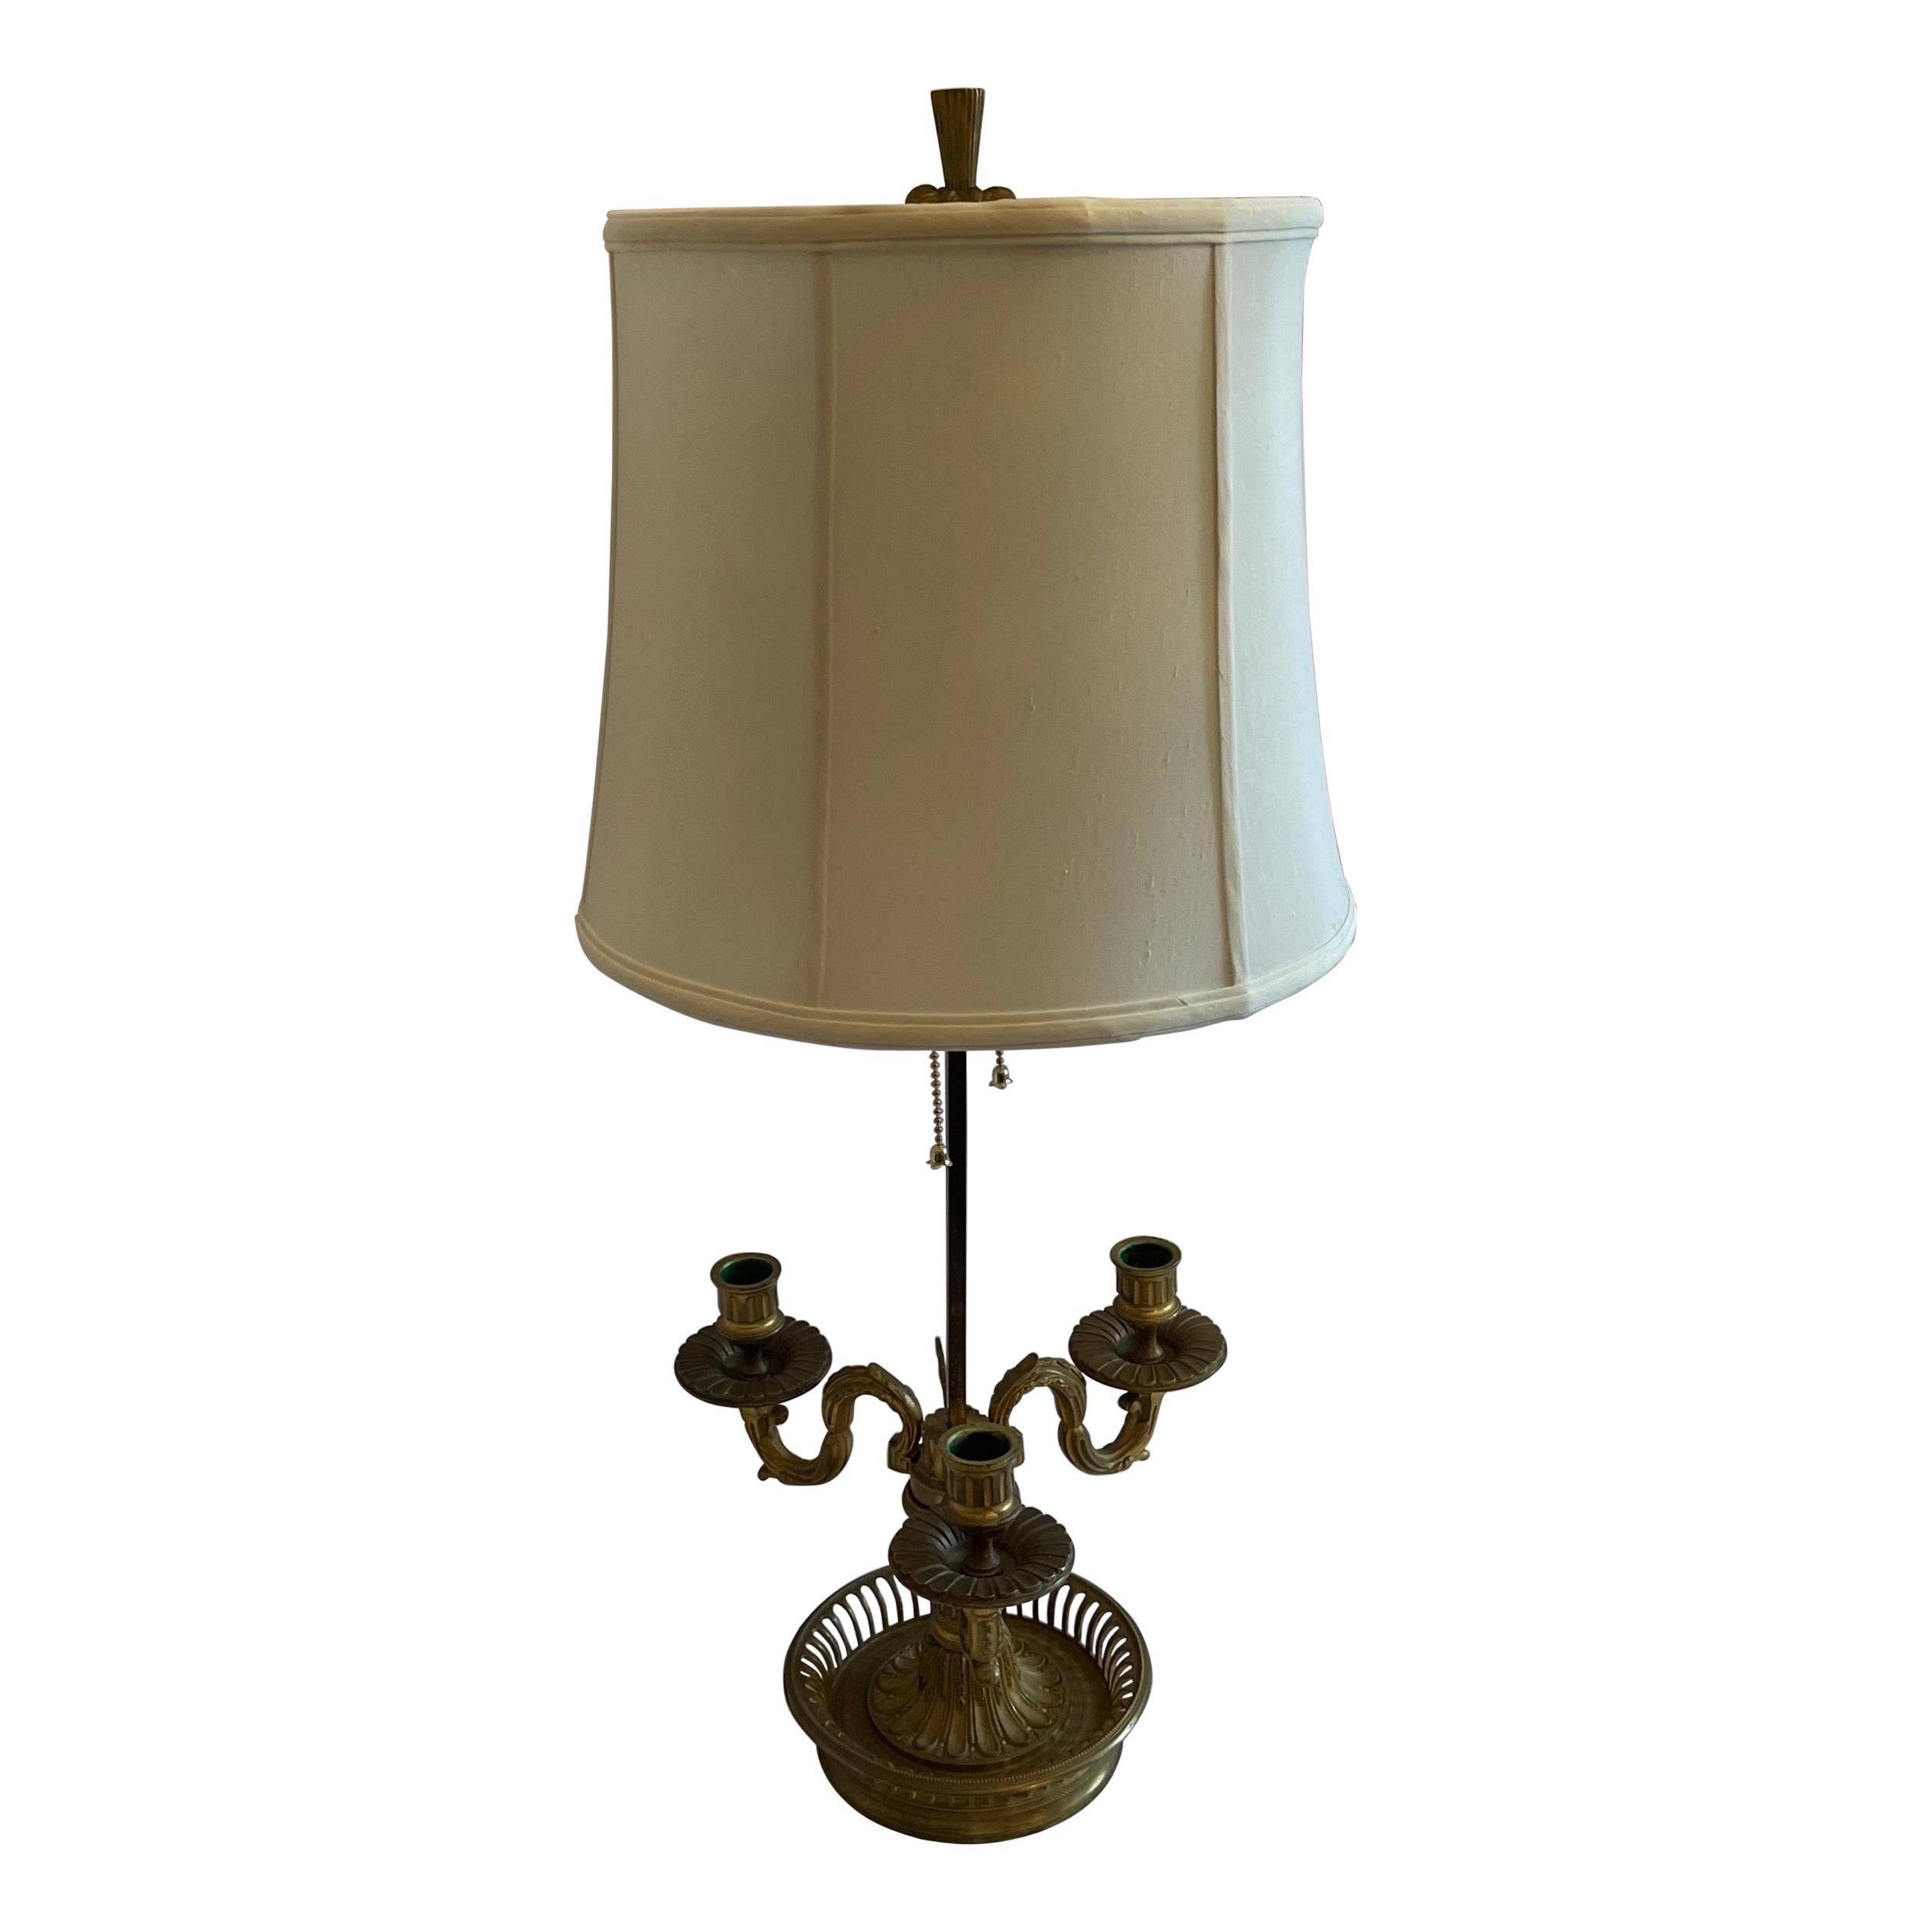 Lampe bouillotte française en bronze de style néoclassique avec trois candélabres et abat-jour en soie